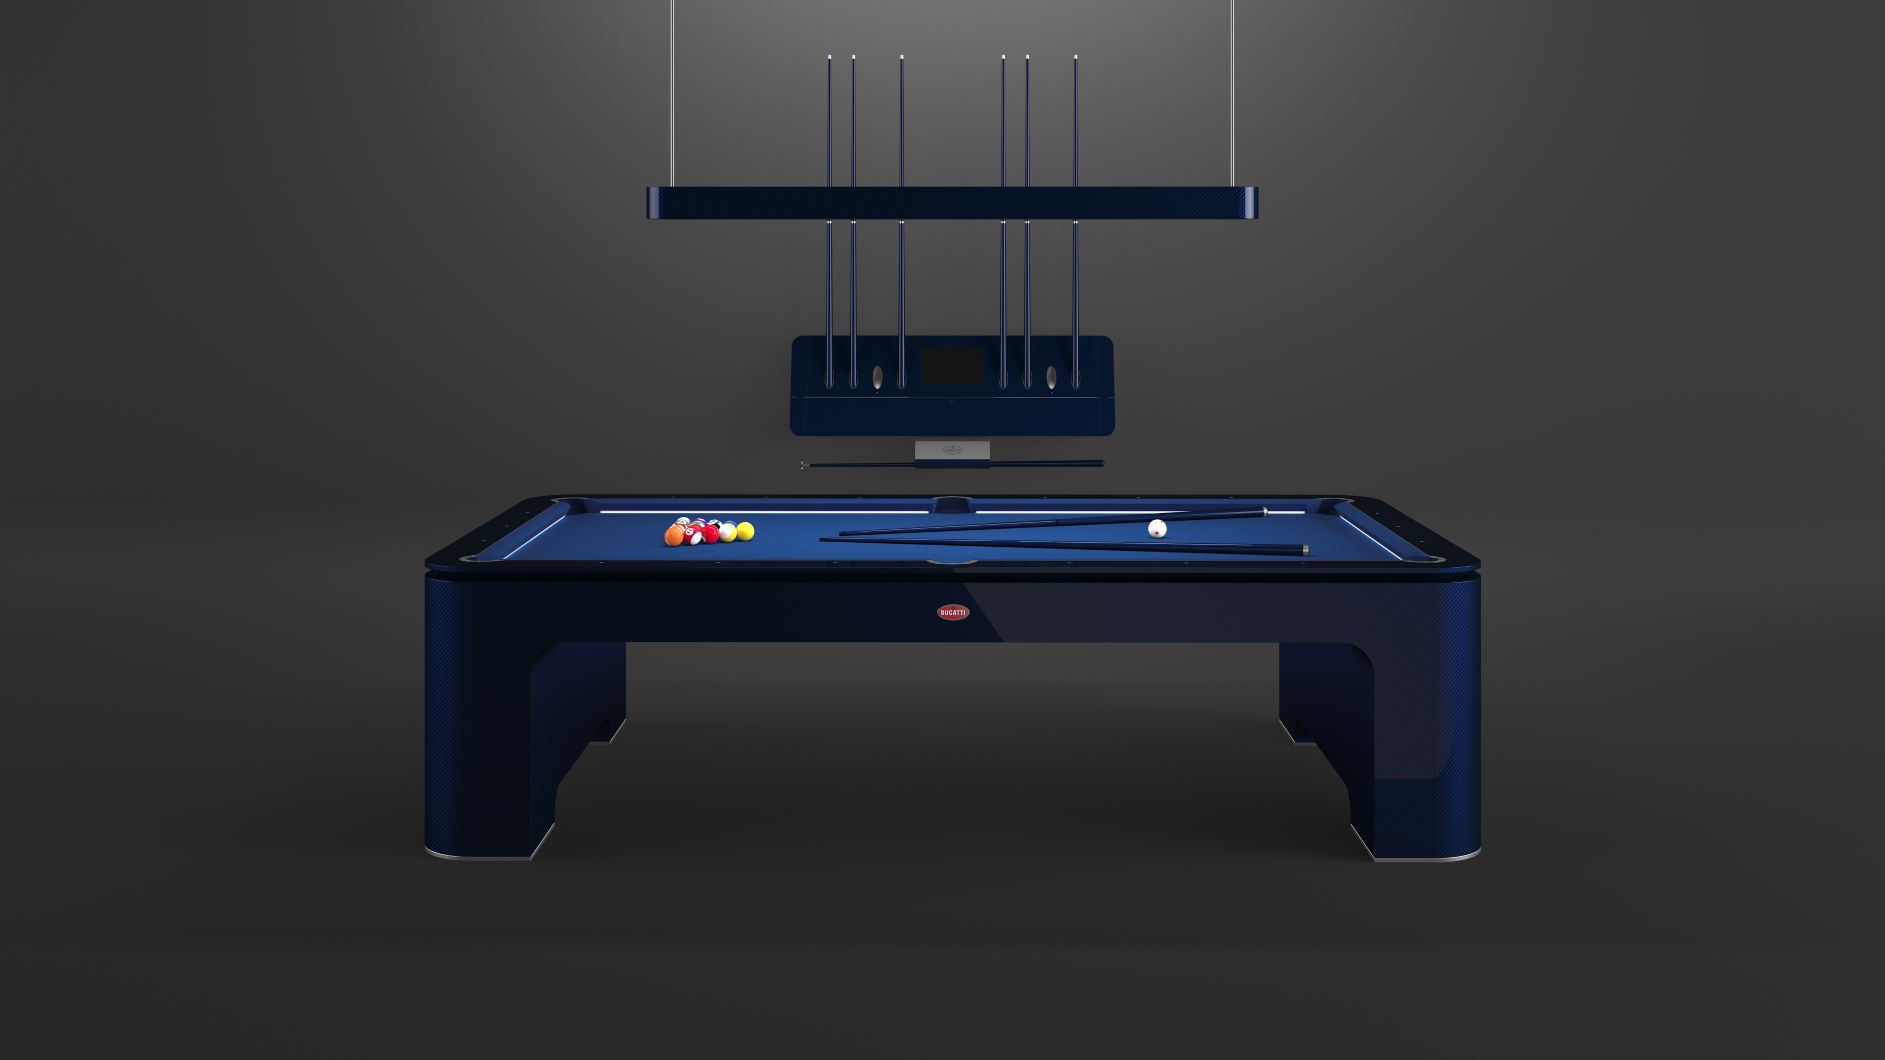 Bugatti's Pool table